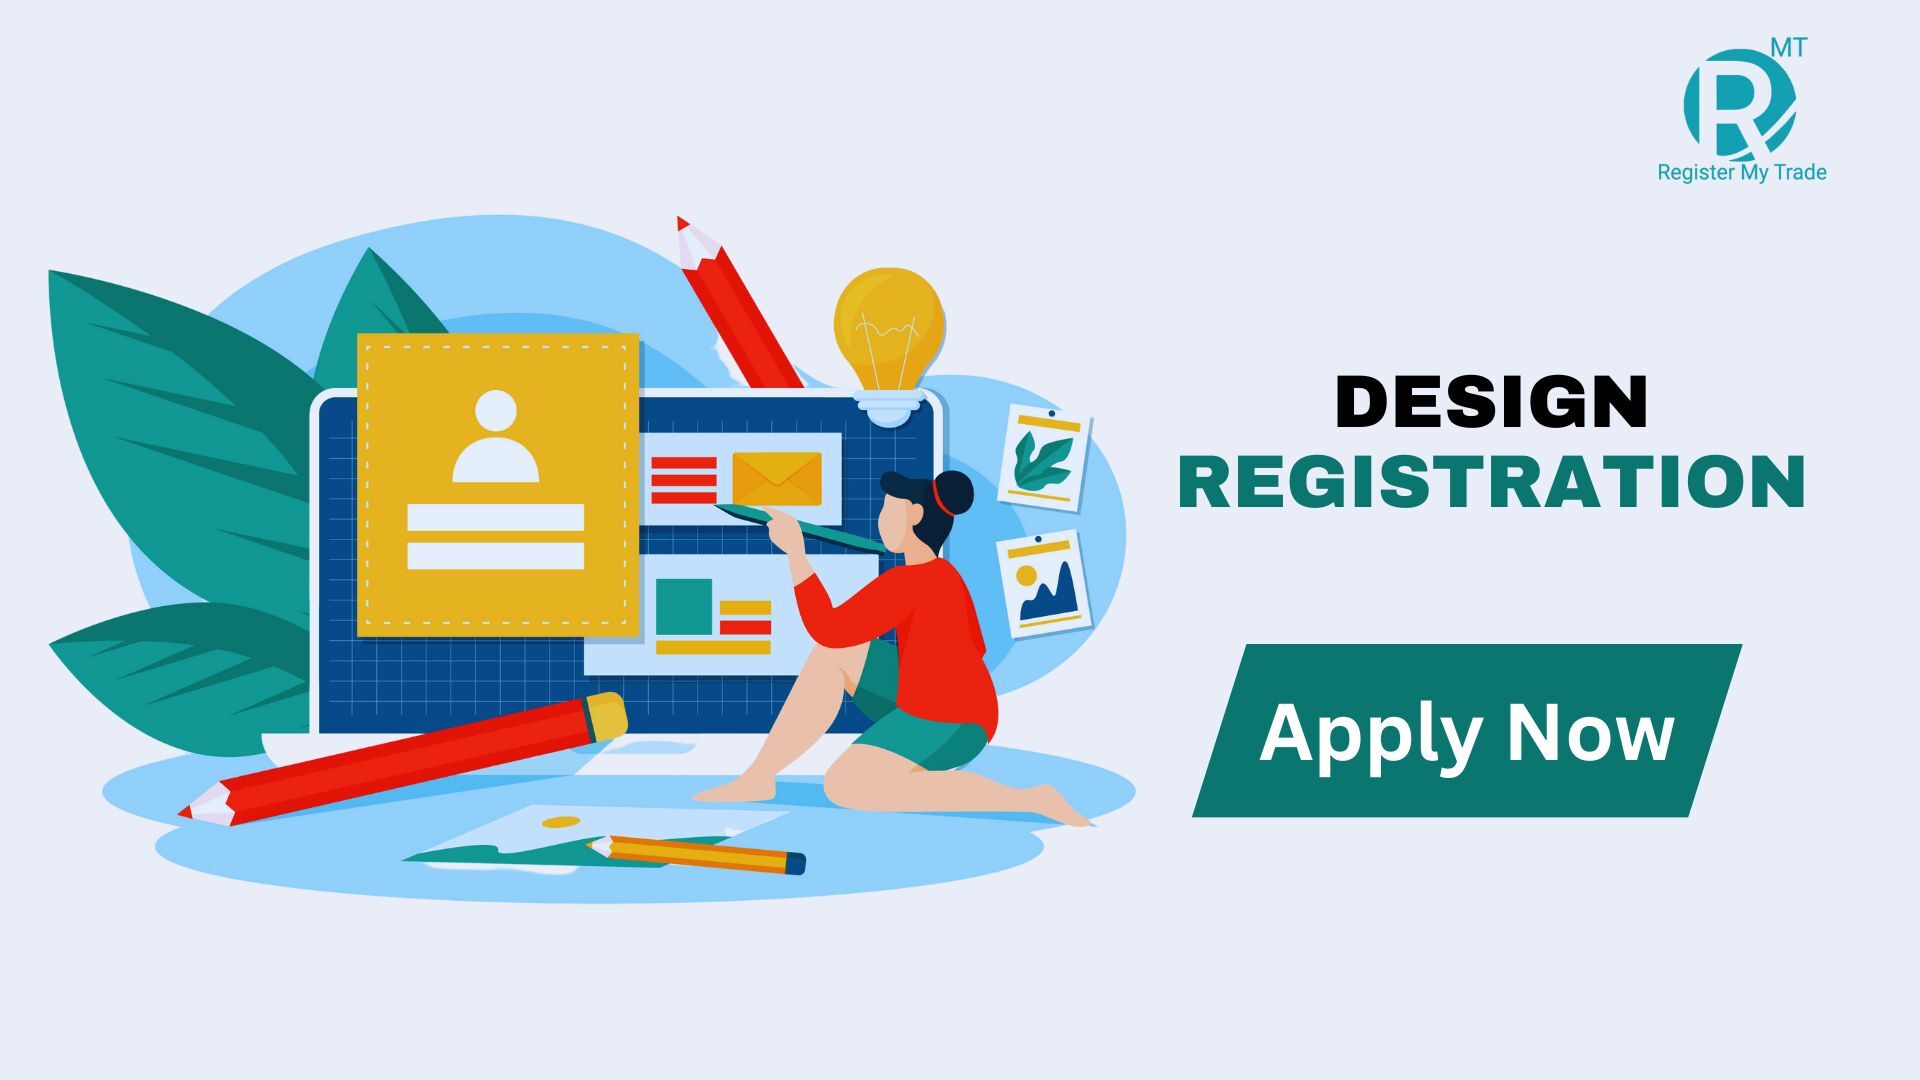 Apply Now for Design Registration 